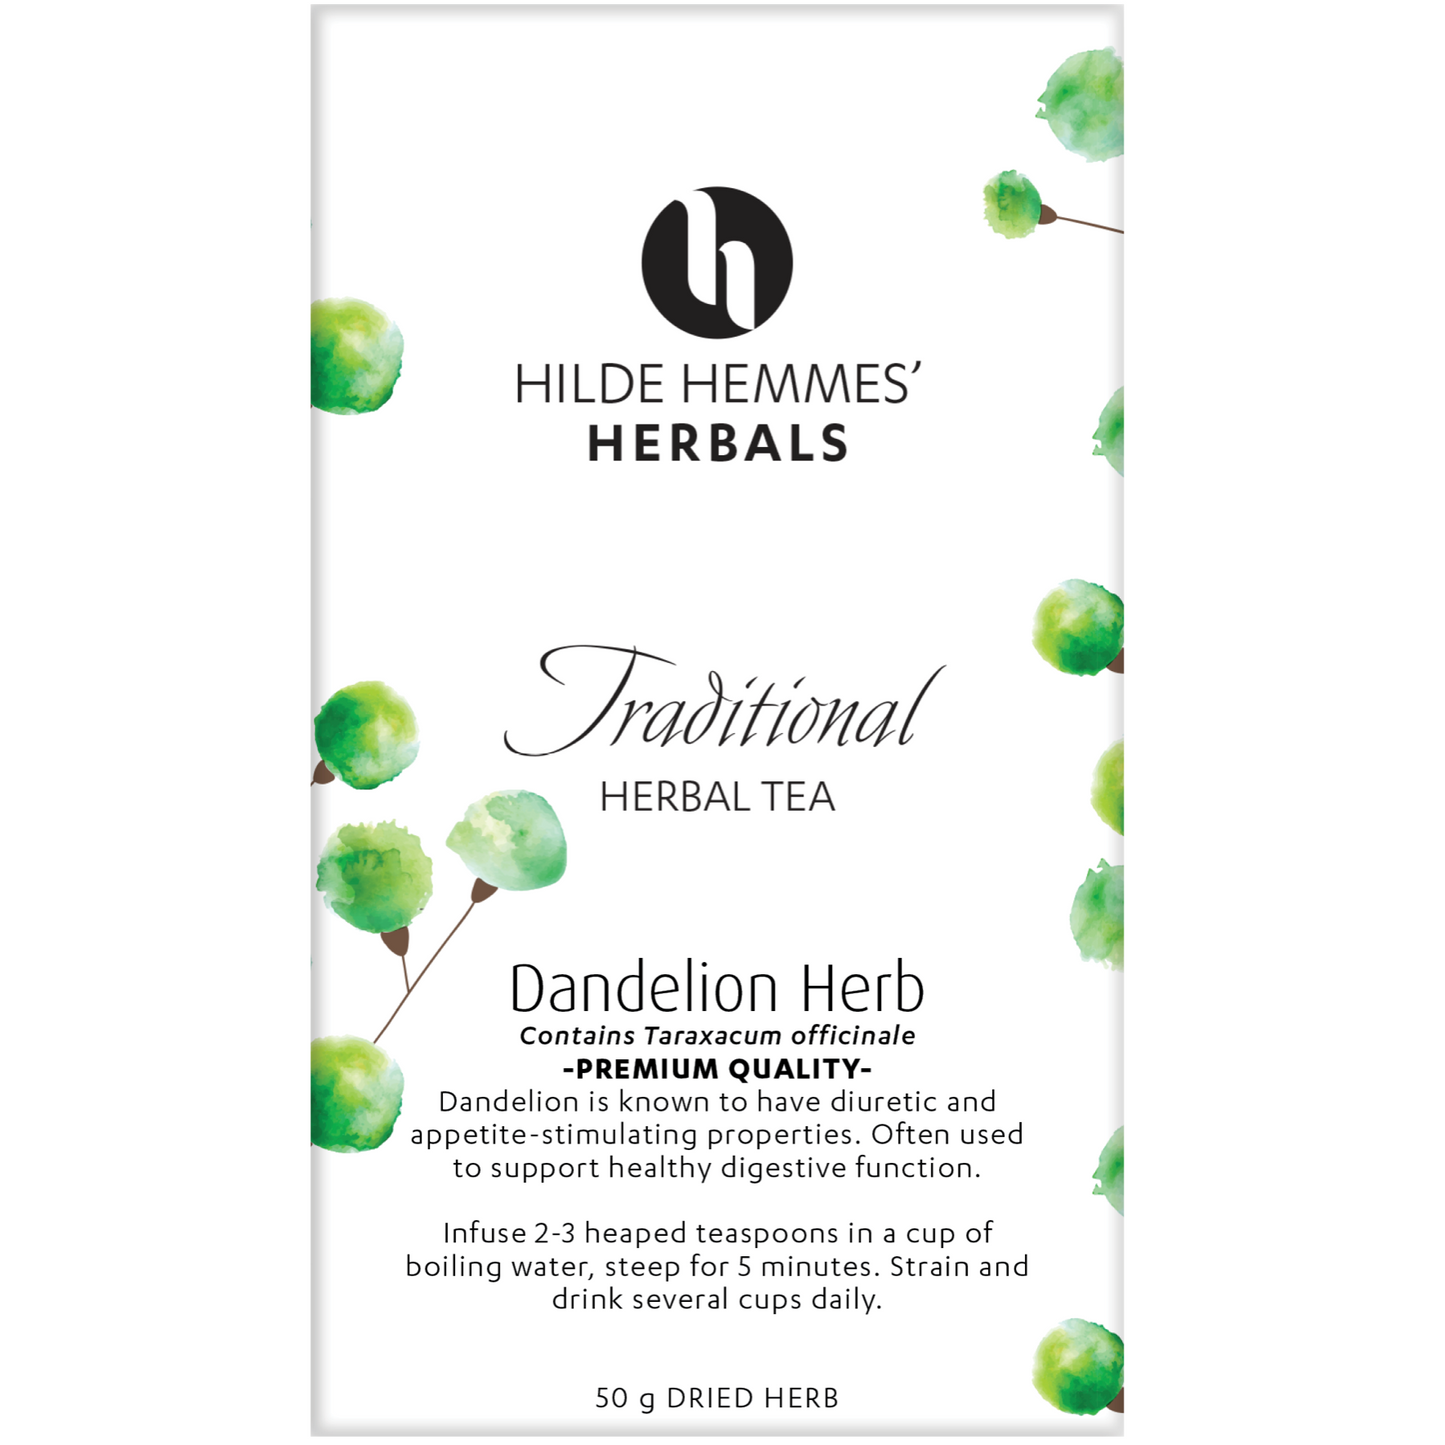 Hilde Hemmes Herbal's Tea 50g, Dandelion Herb (Loose Leaf)